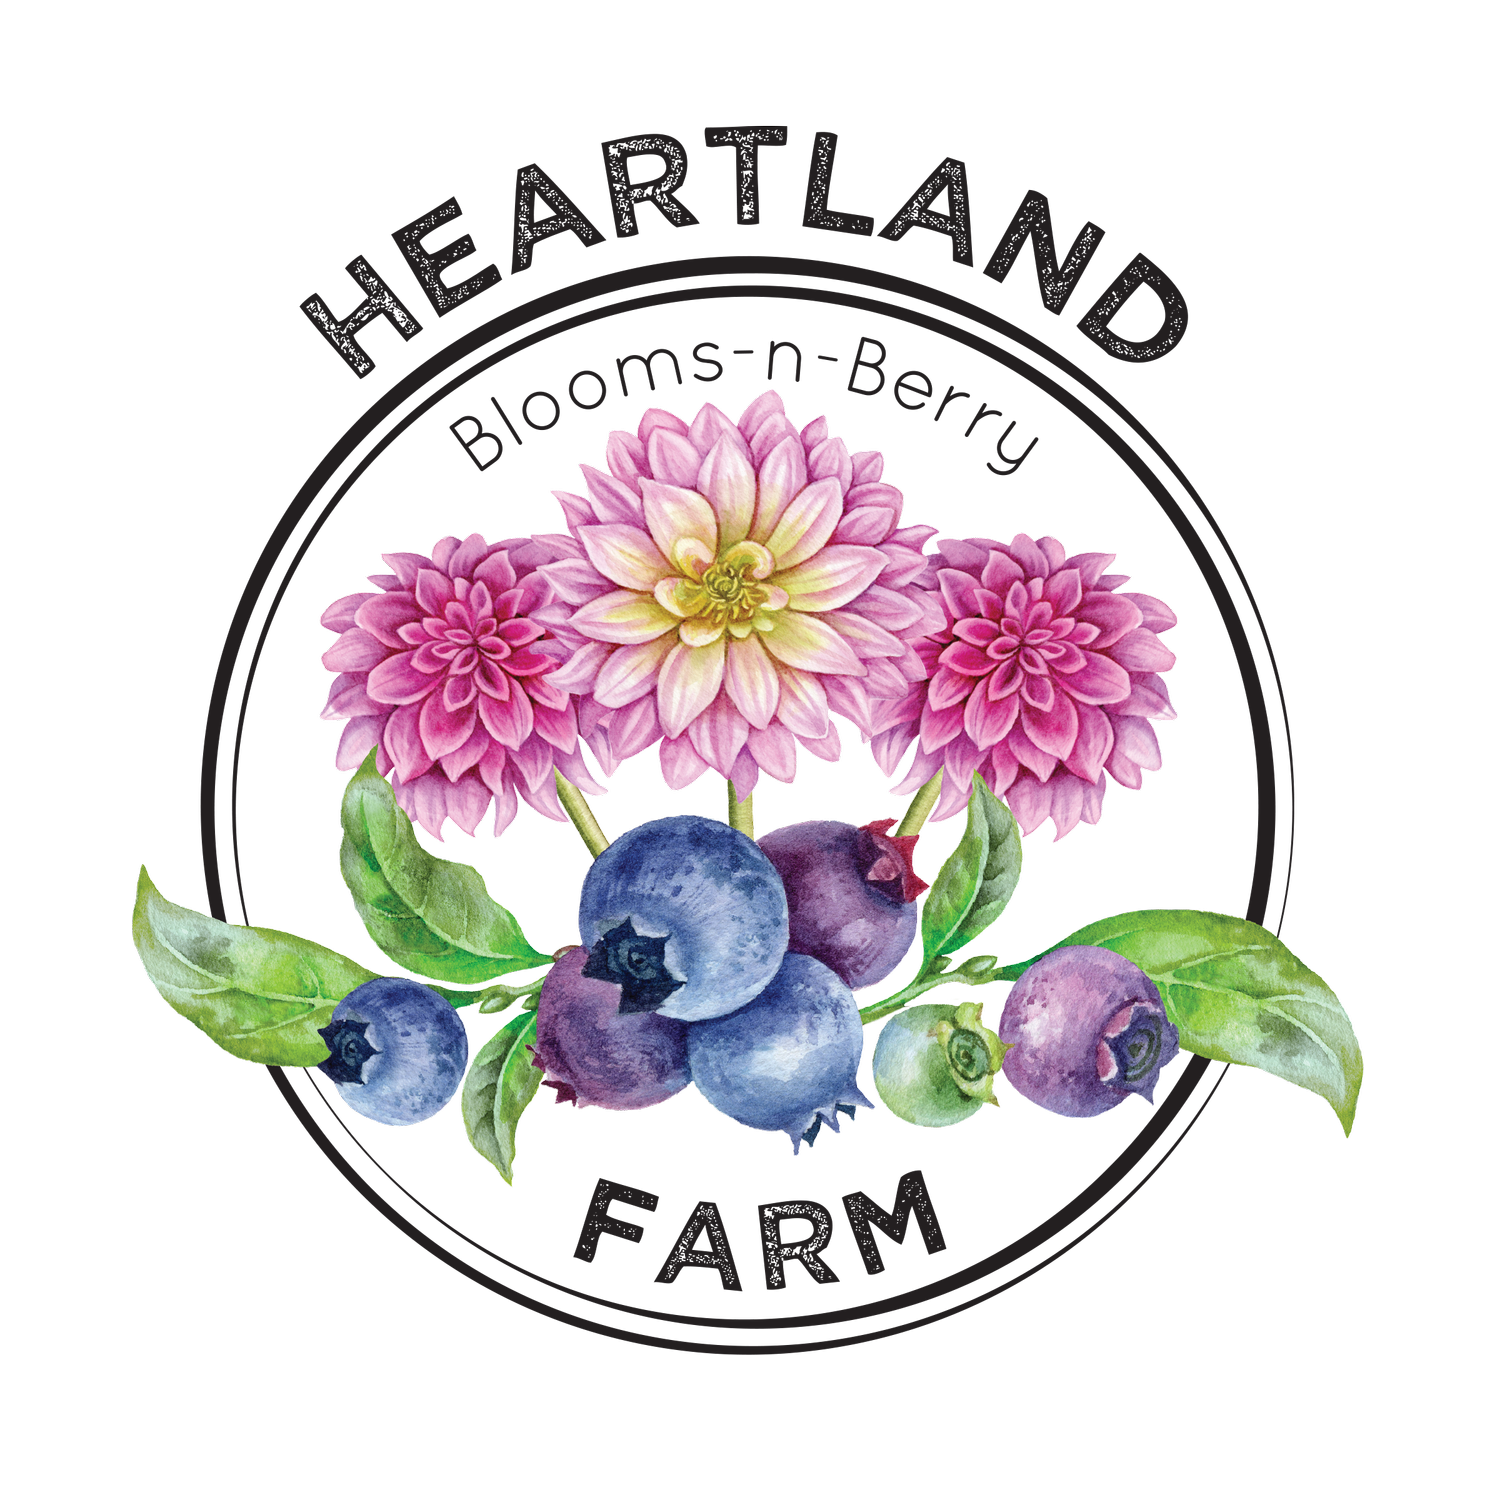 Heartland Blooms-n-Berry Farm